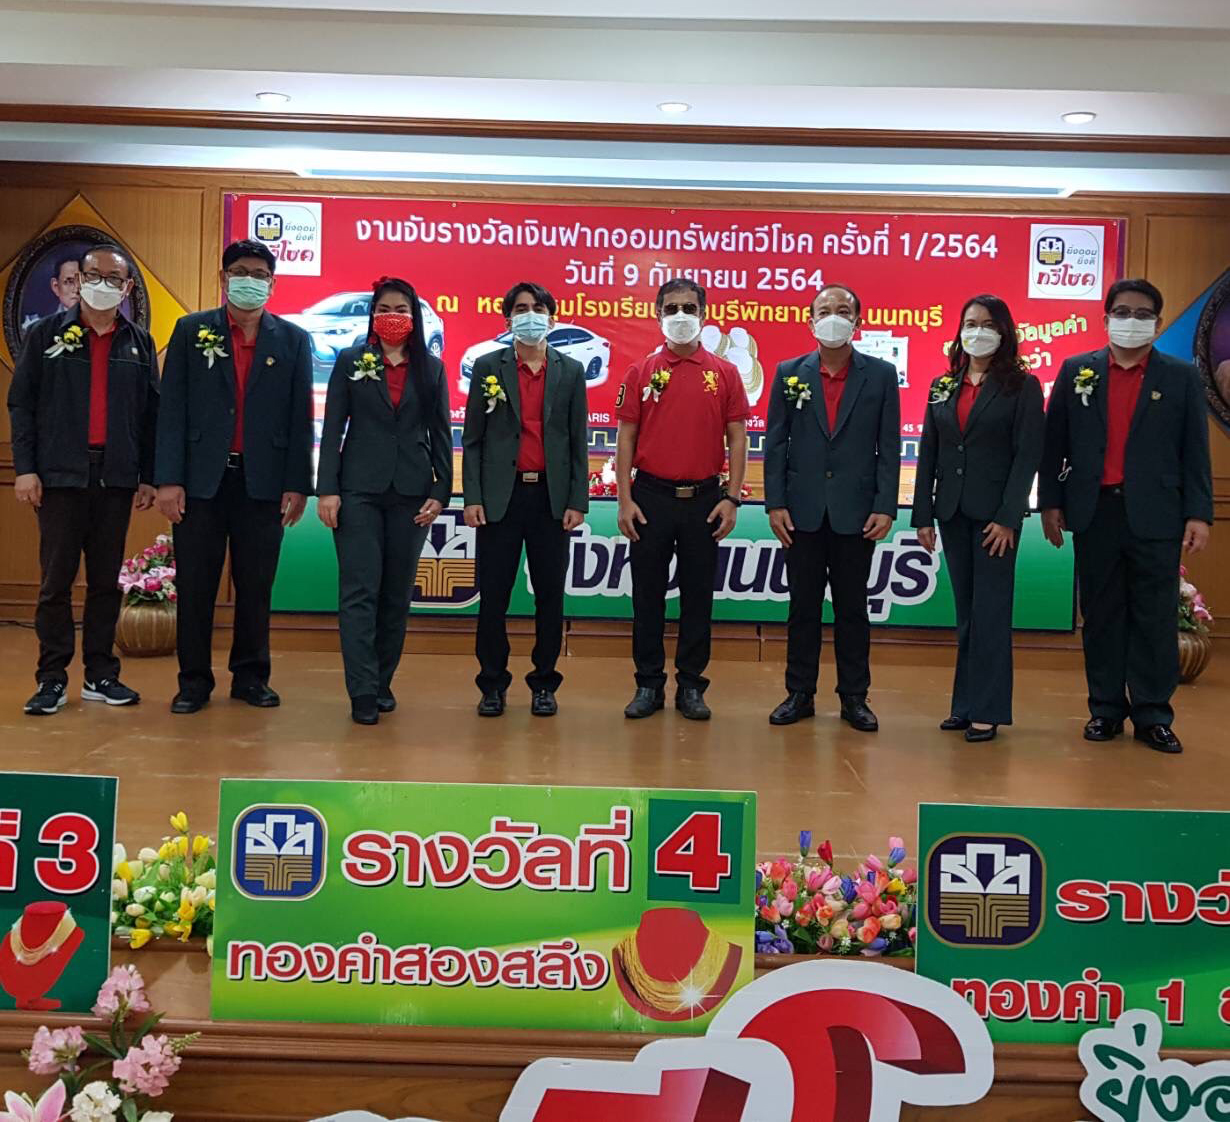 ธ.ก.ส.นนทบุรี จับรางวัลเงินฝากออมทรัพย์ทวีโชคครั้งที่ 1/2564